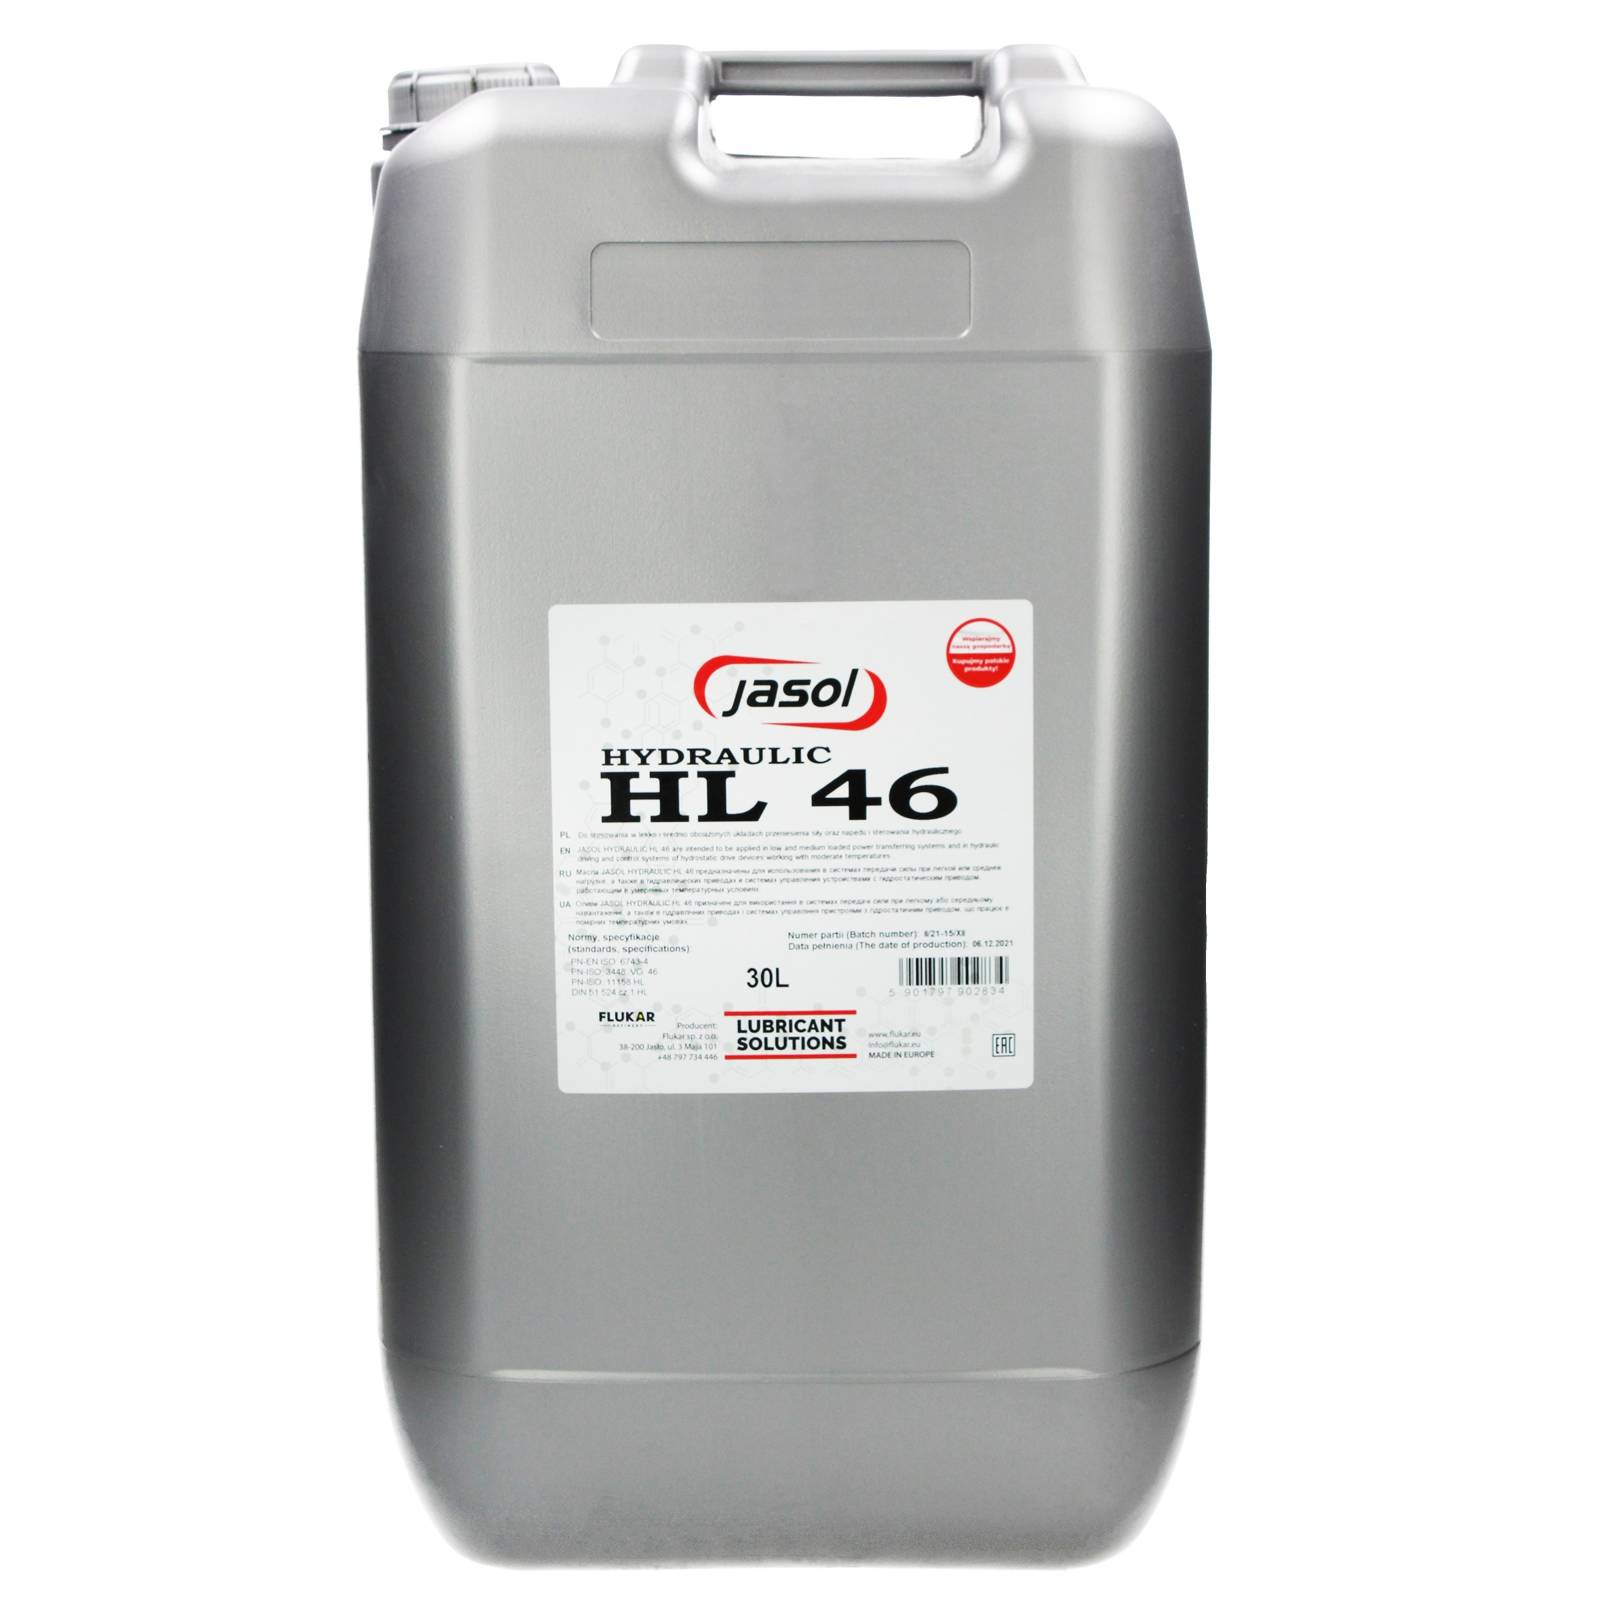 Гидравлическое масло JASOL HL 46 30л., HL4620